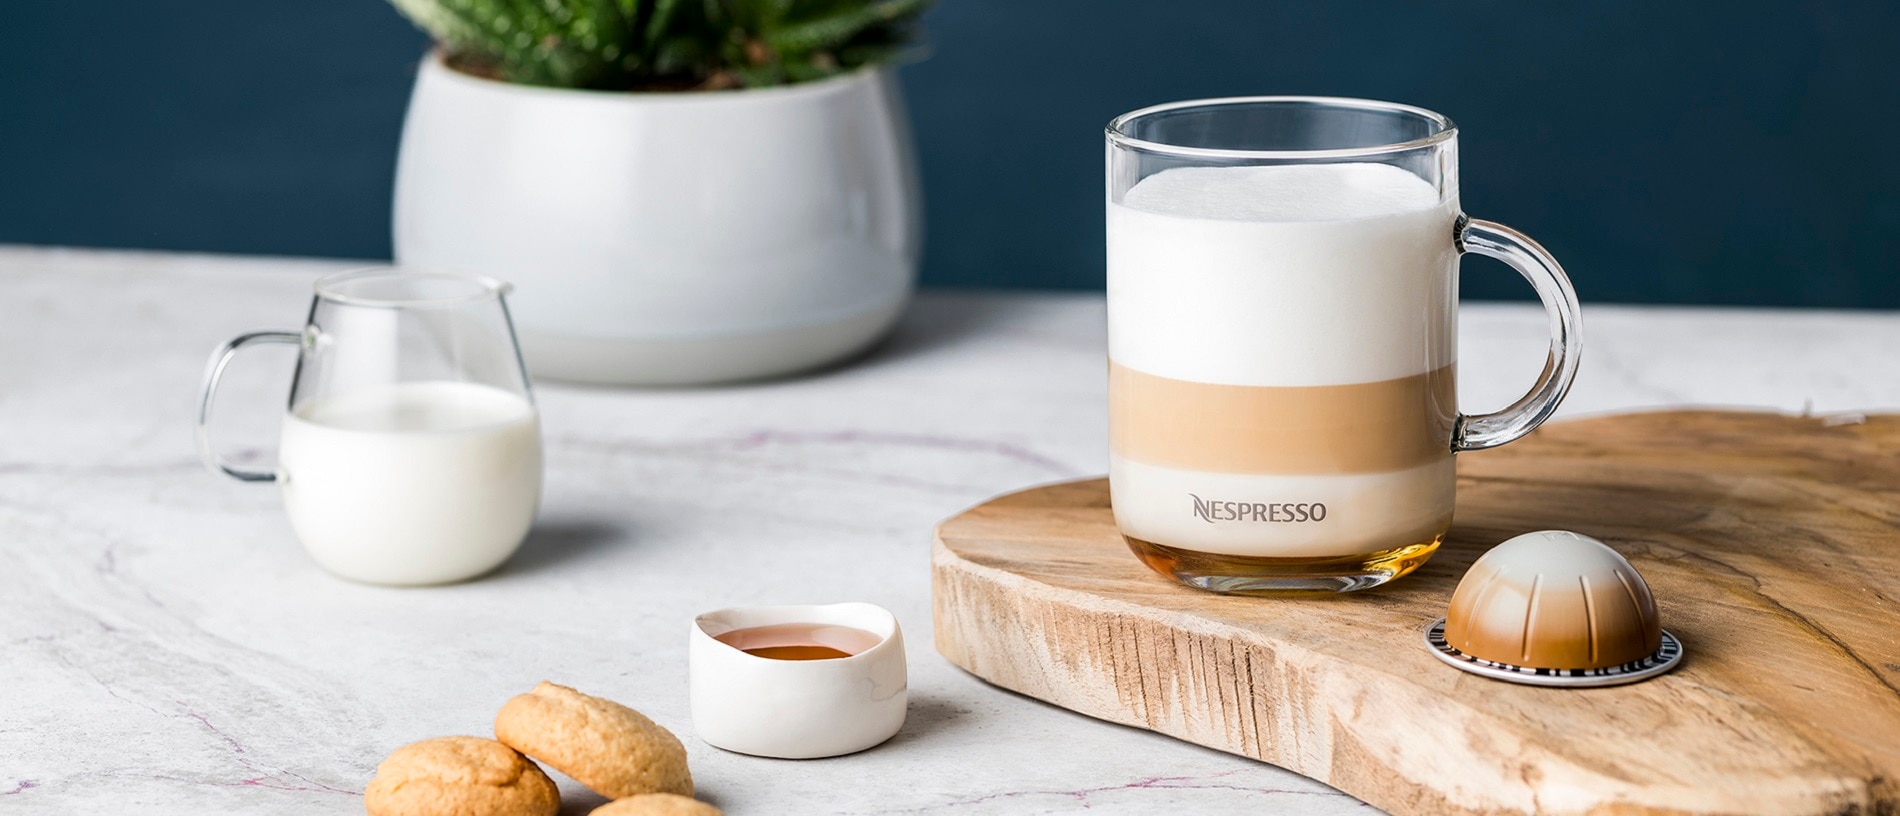 Buik Weglaten Bijwerken Bianco Leggero Alternative Soy Milk - Nespresso Recipes